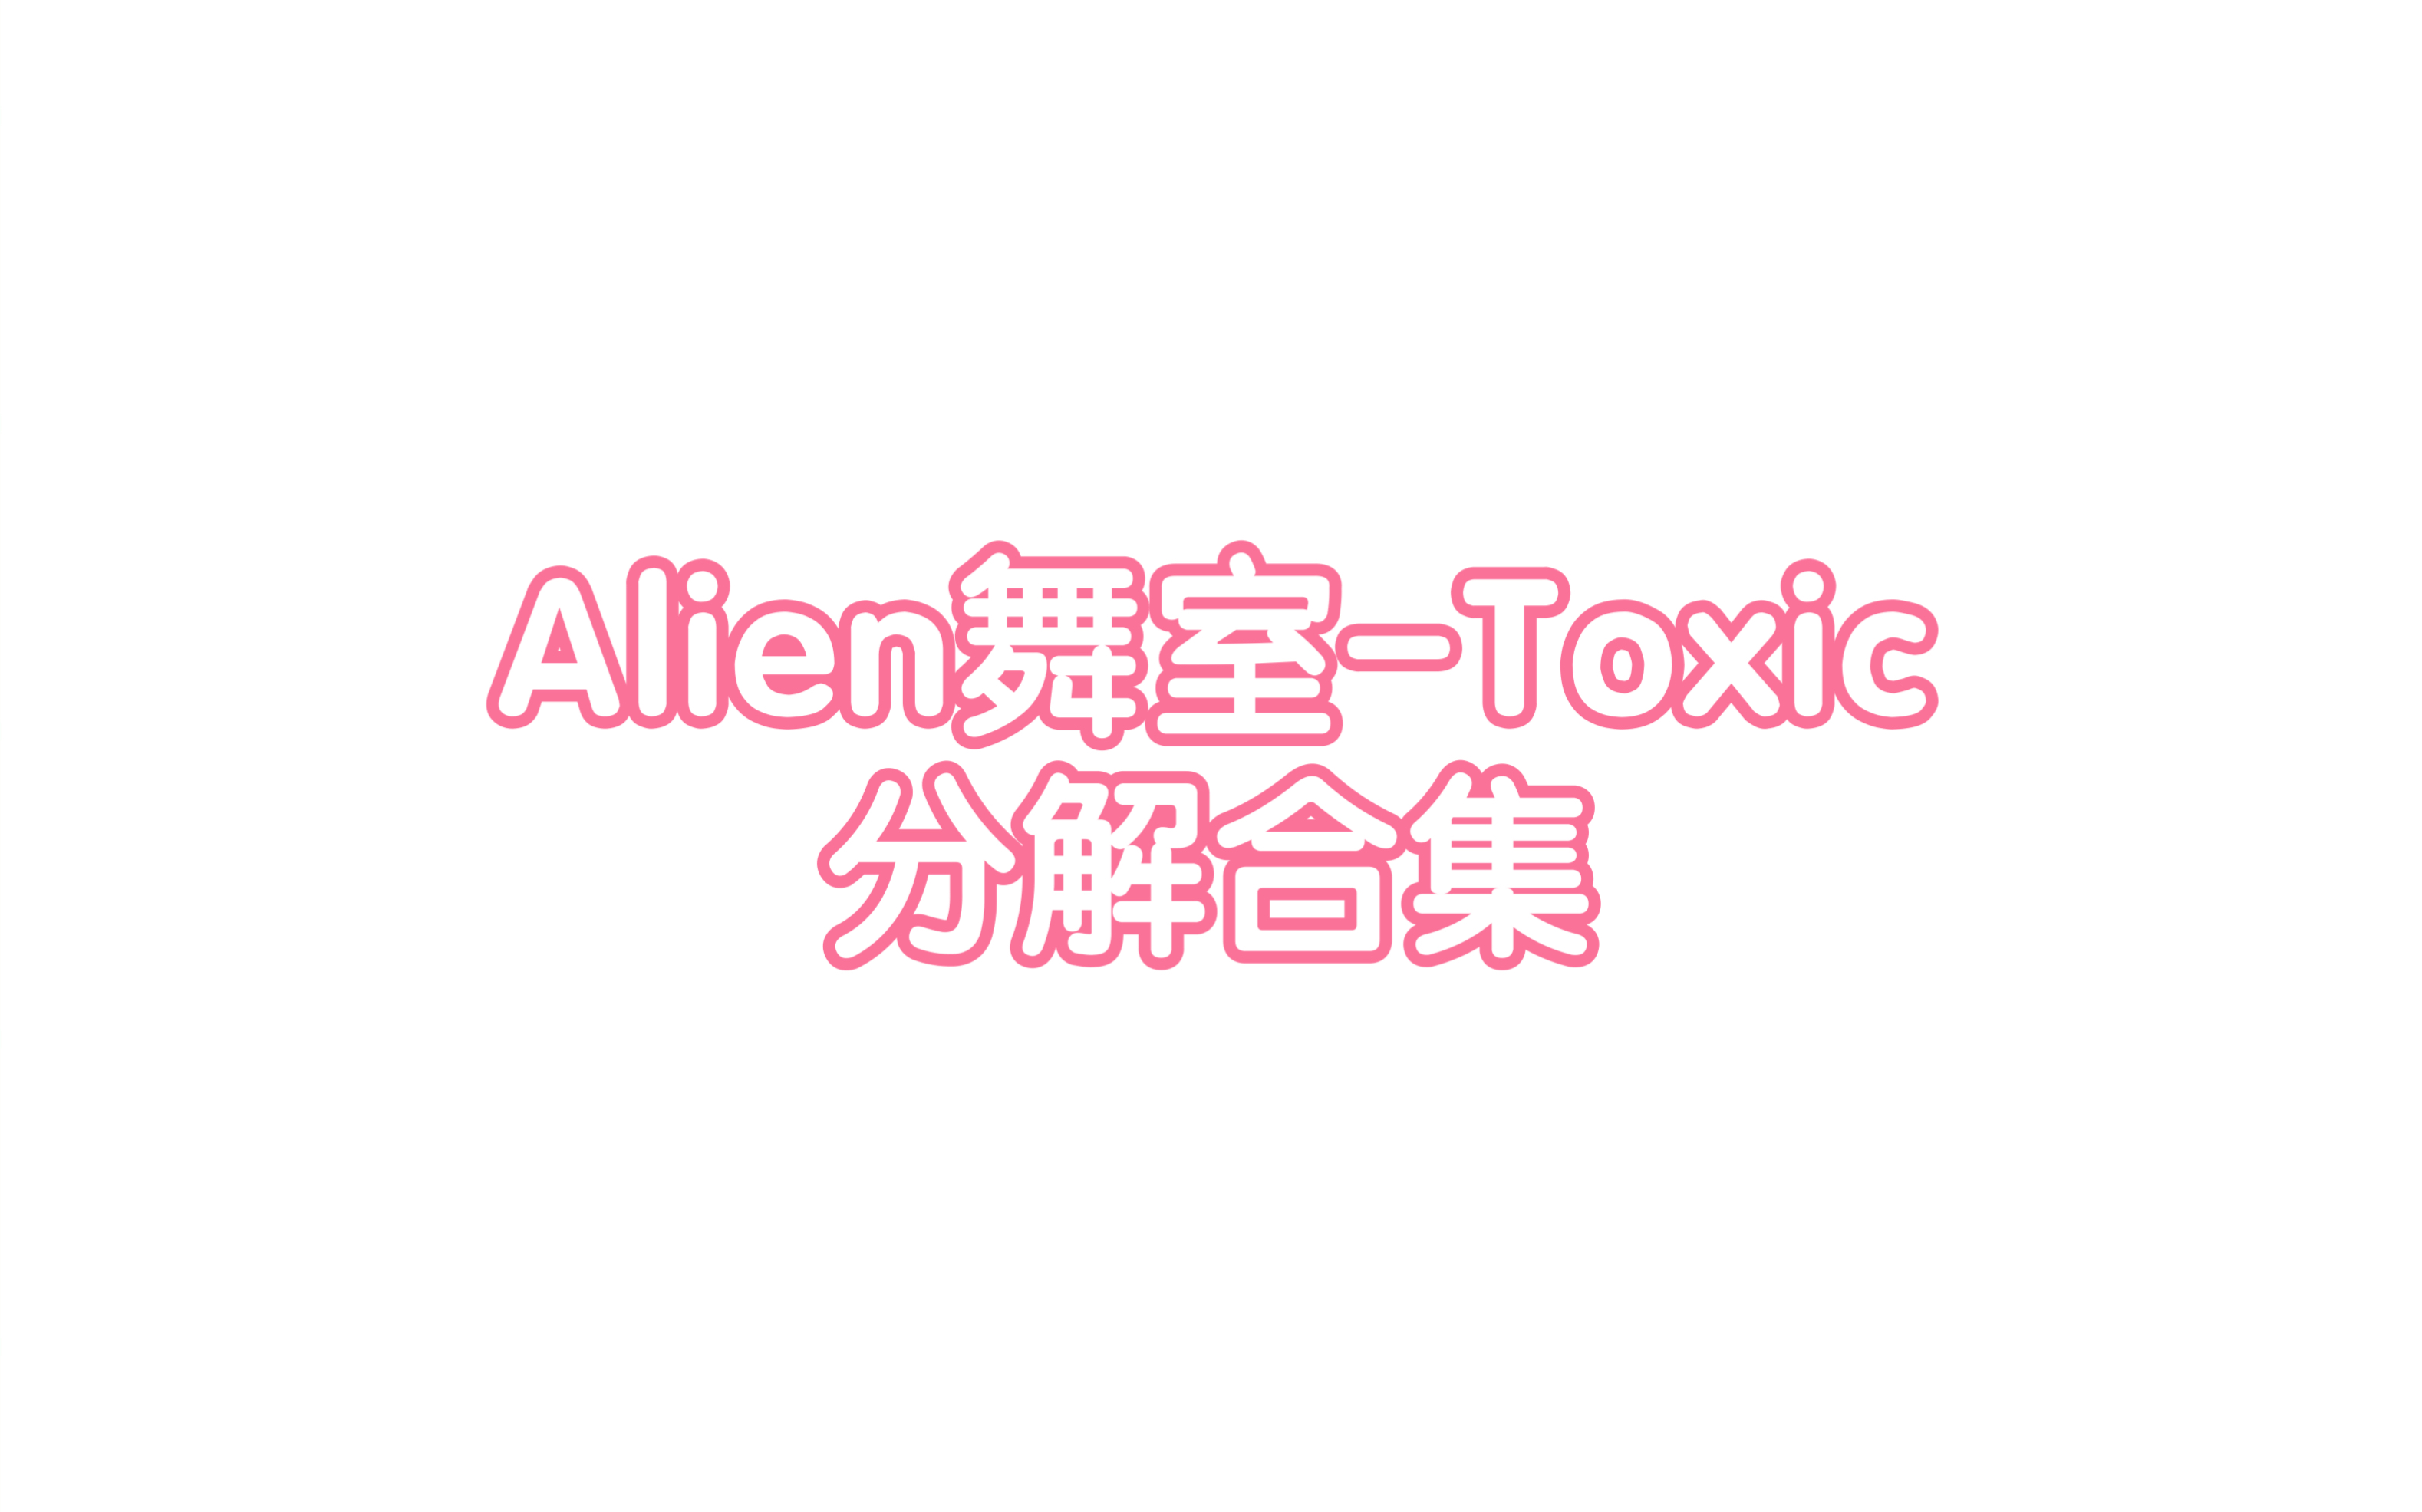 alien舞室-toxic分解合集